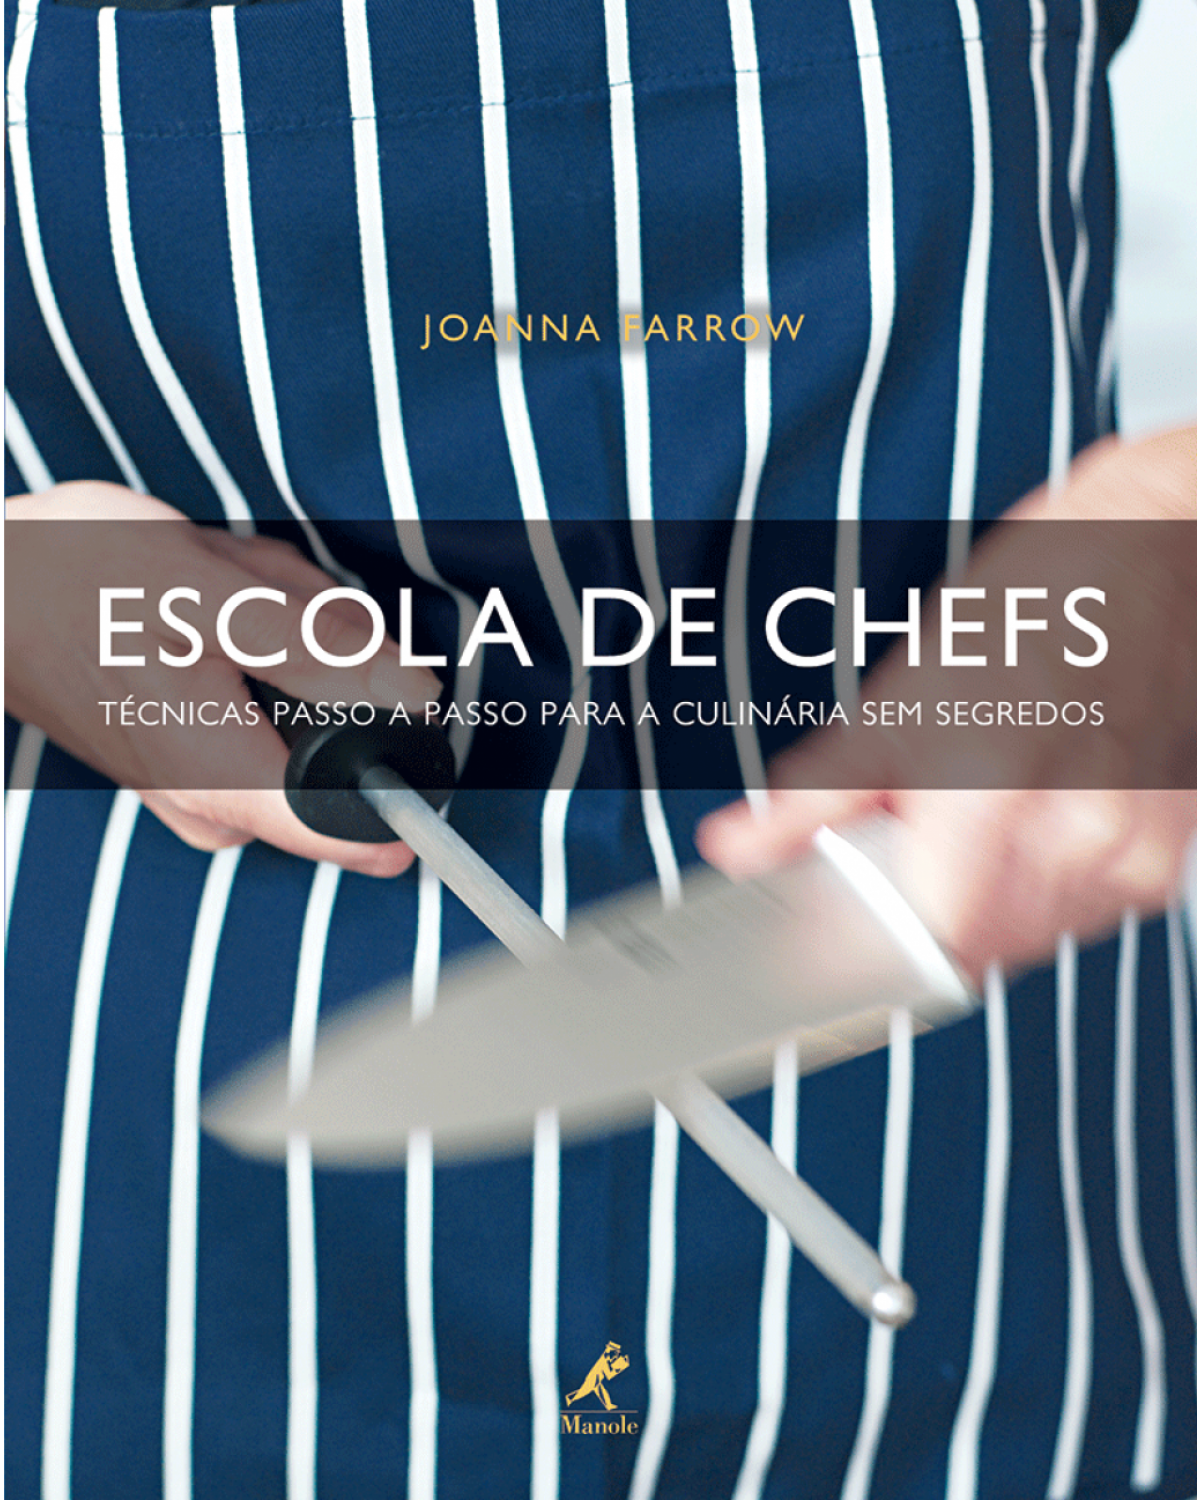 Escola de chefs - Técnicas passo a passo para a culinária sem segredos - 1ª Edição | 2009